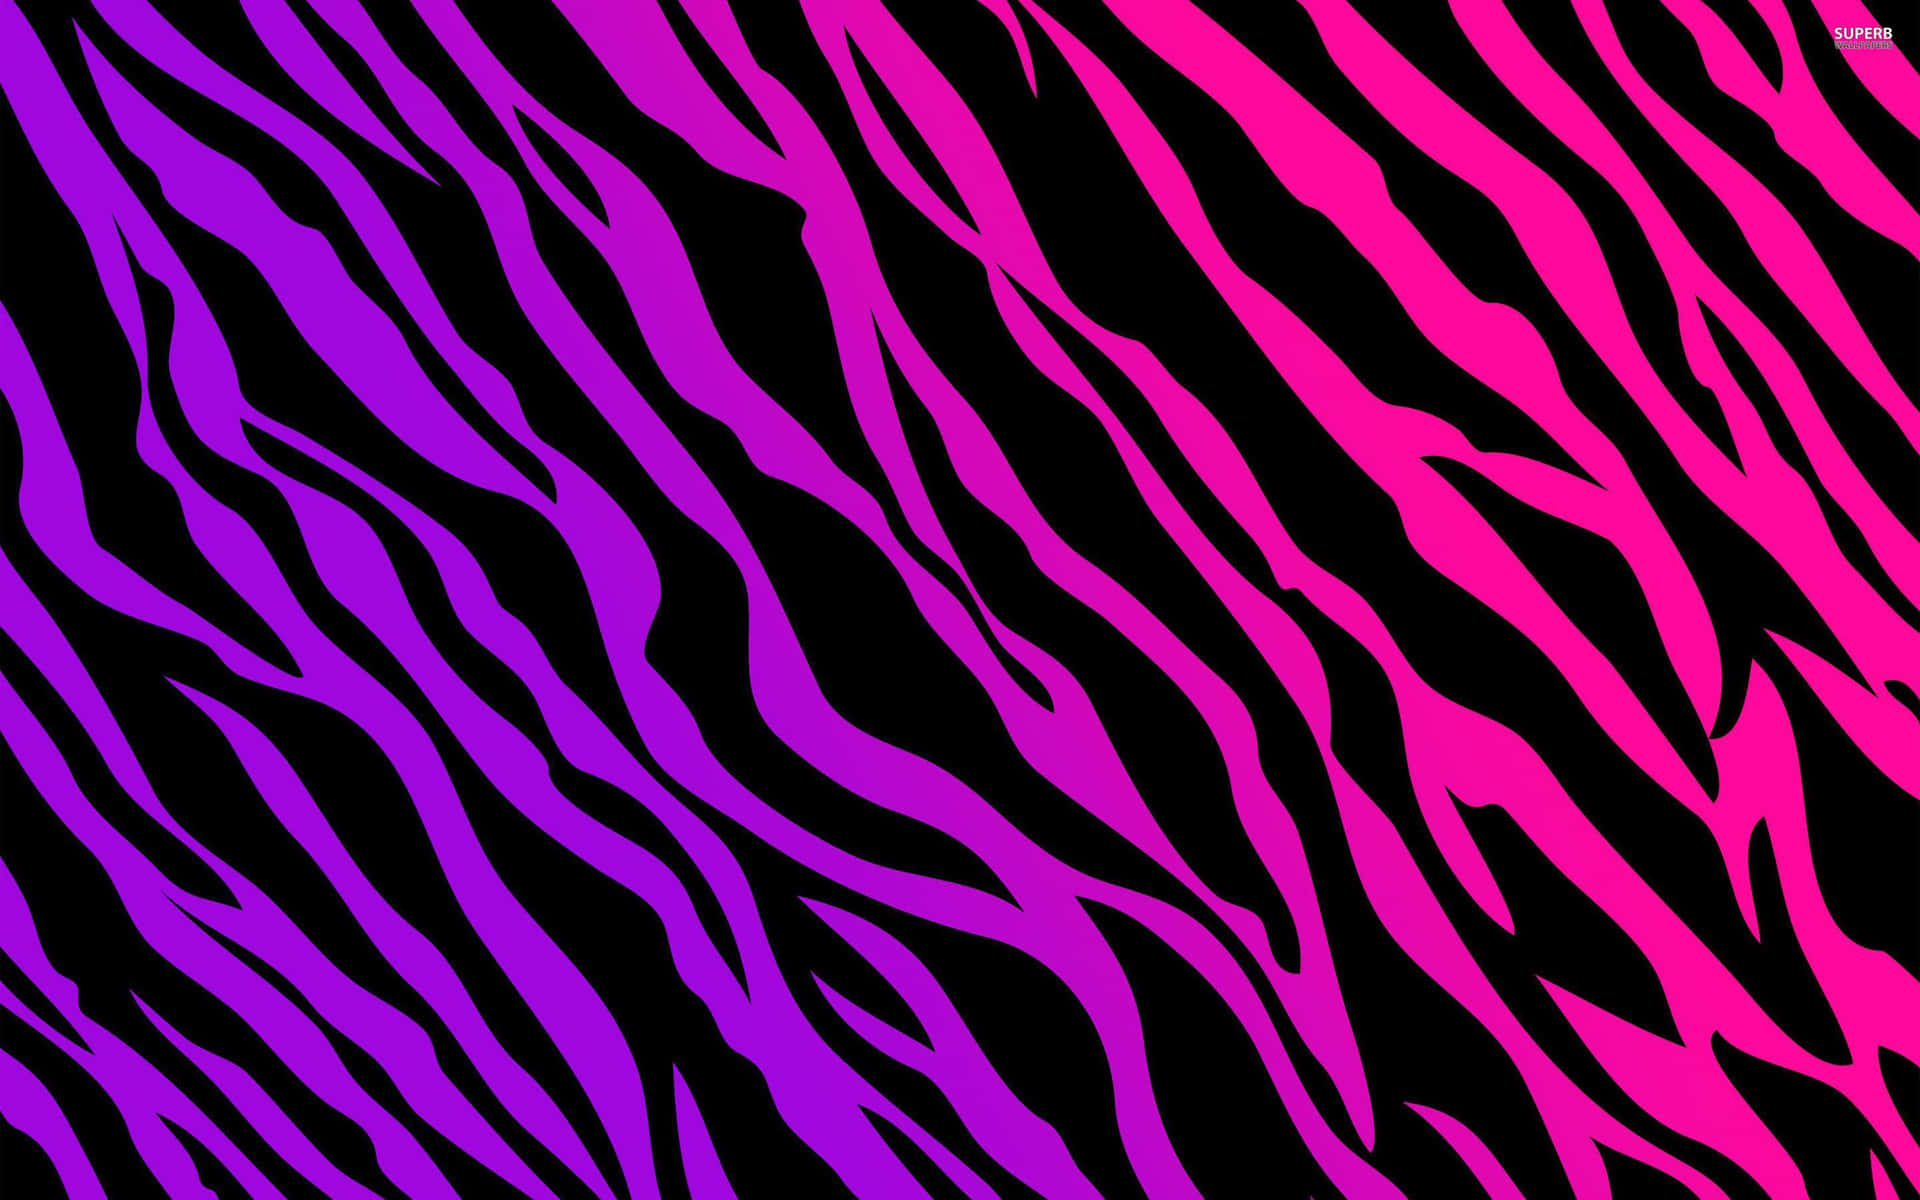 Bildleuchtend Pinke Zebrastreifen Auf Schwarzem Hintergrund. Wallpaper